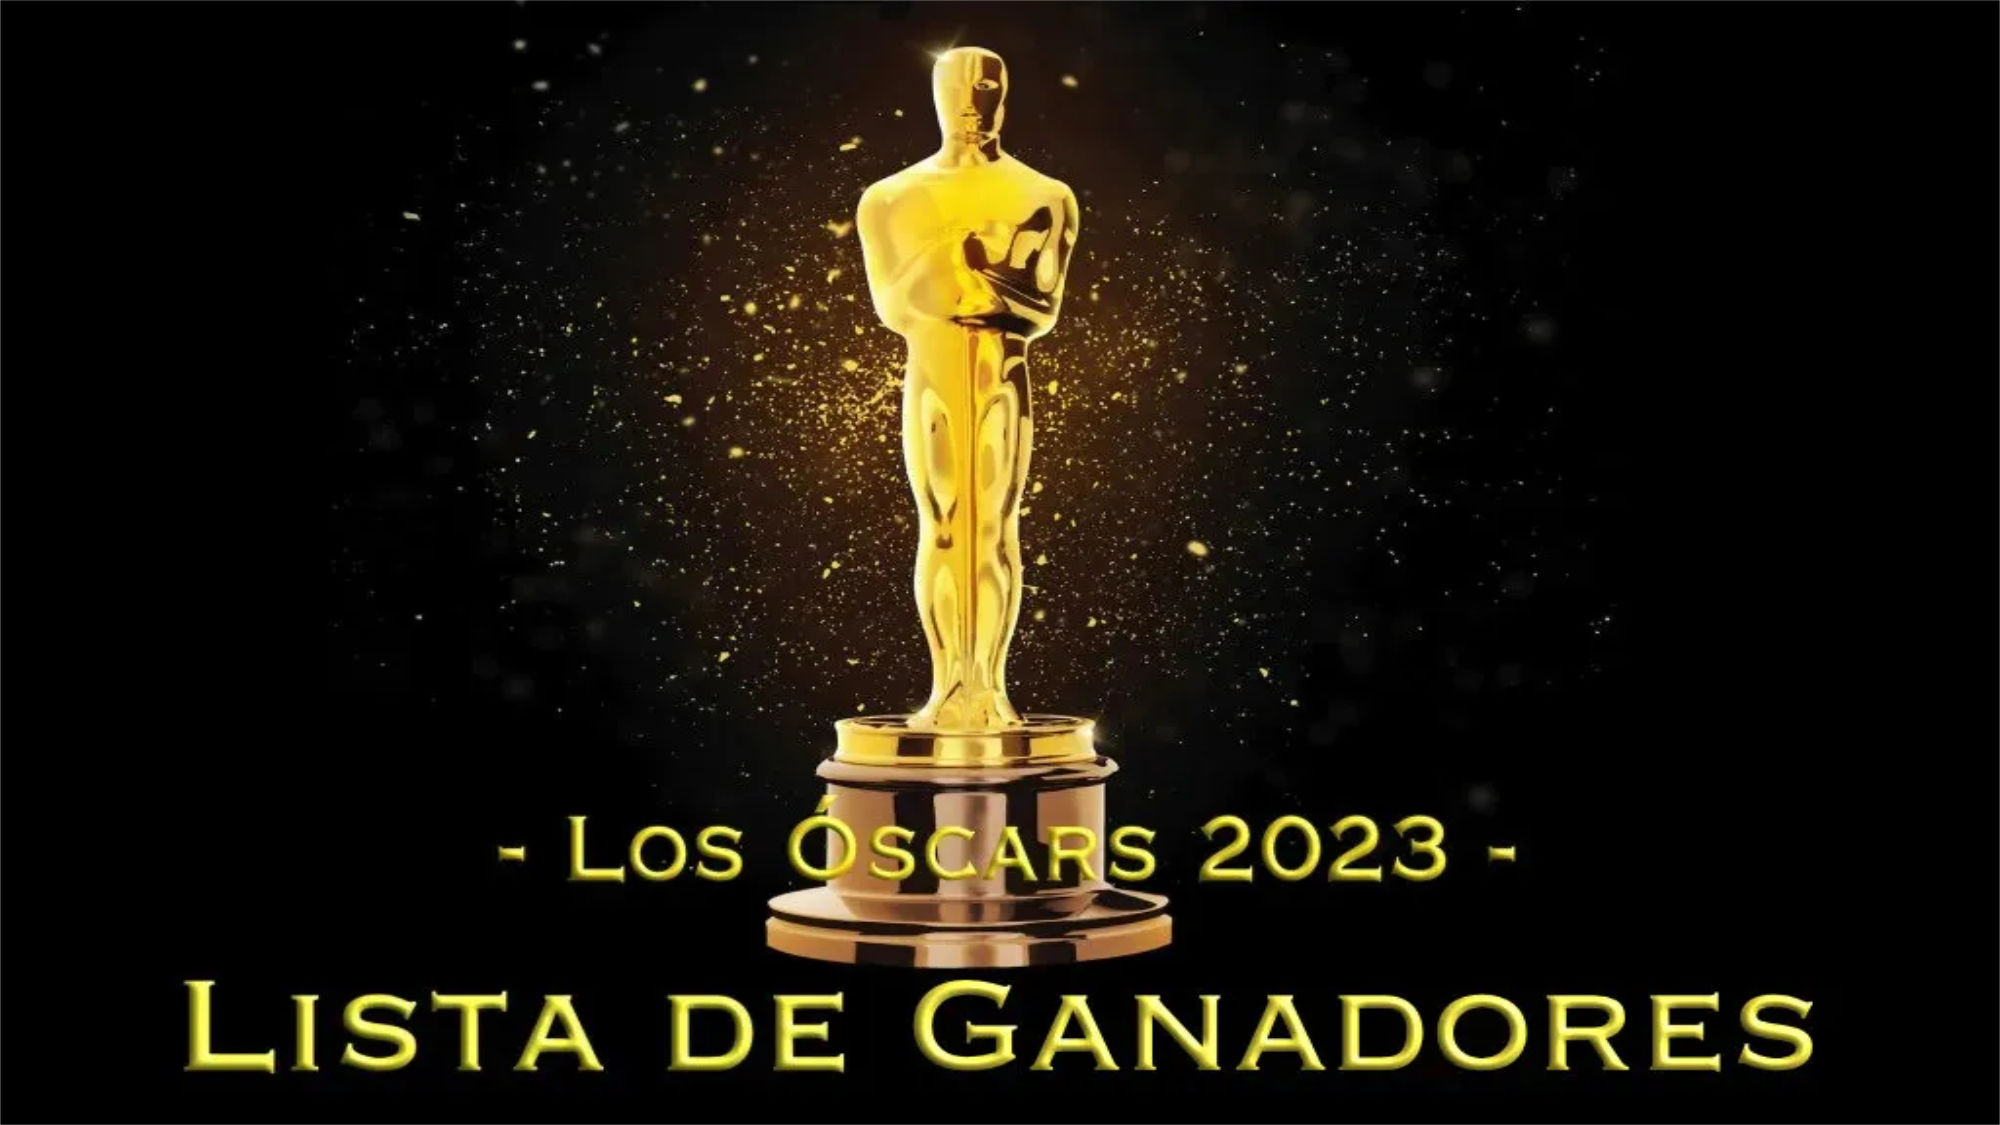 Ganadores de los Óscars 2023: lista completa de los premiados